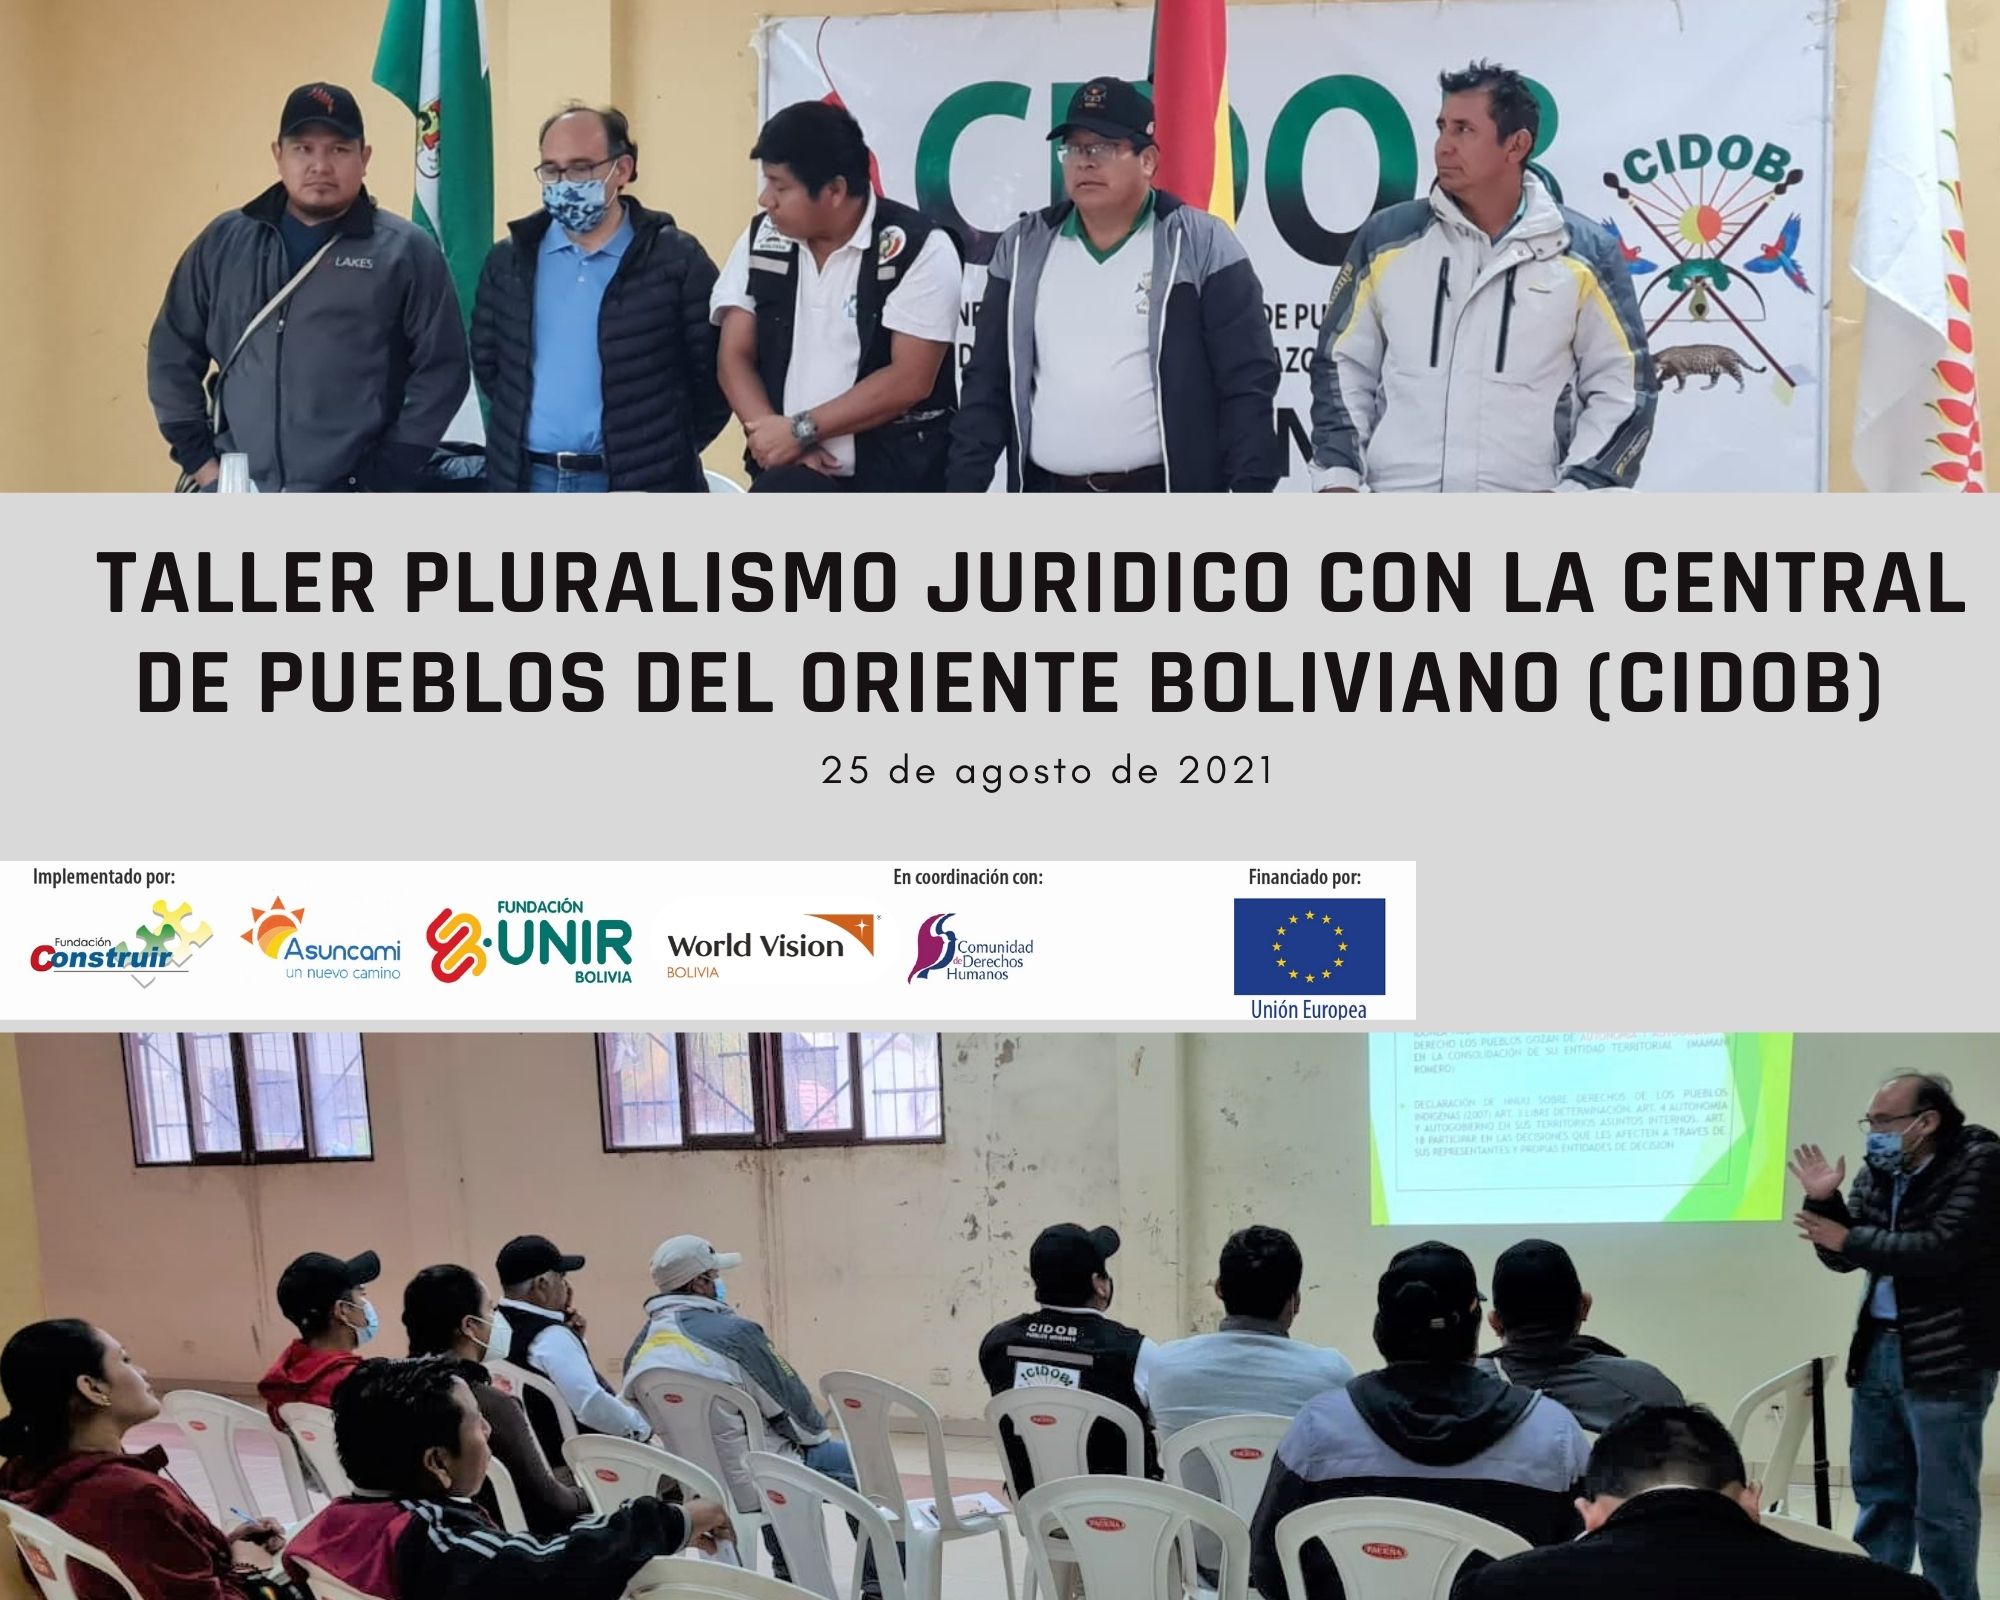 Taller de Pluralismo Jurídico impulsado por Fundación CONSTRUIR y la Central de Pueblos del Oriente Boliviano (CIDOB)